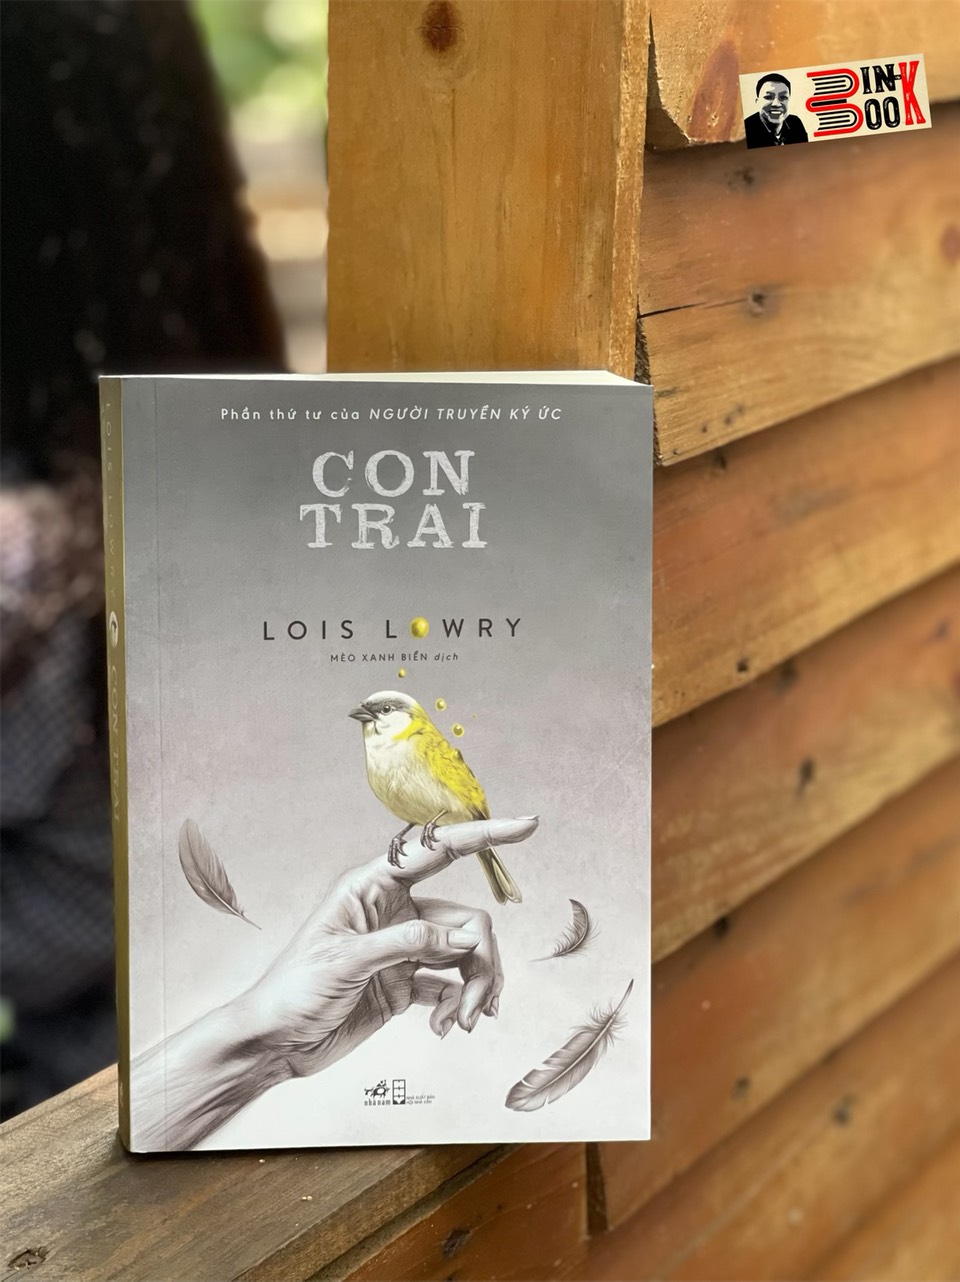 CON TRAI (PHẦN THỨ TƯ CỦA NGƯỜI TRUYỀN KÝ ỨC) – Lois Lowry – Mèo Xanh Biển dịch – Nhã Nam 